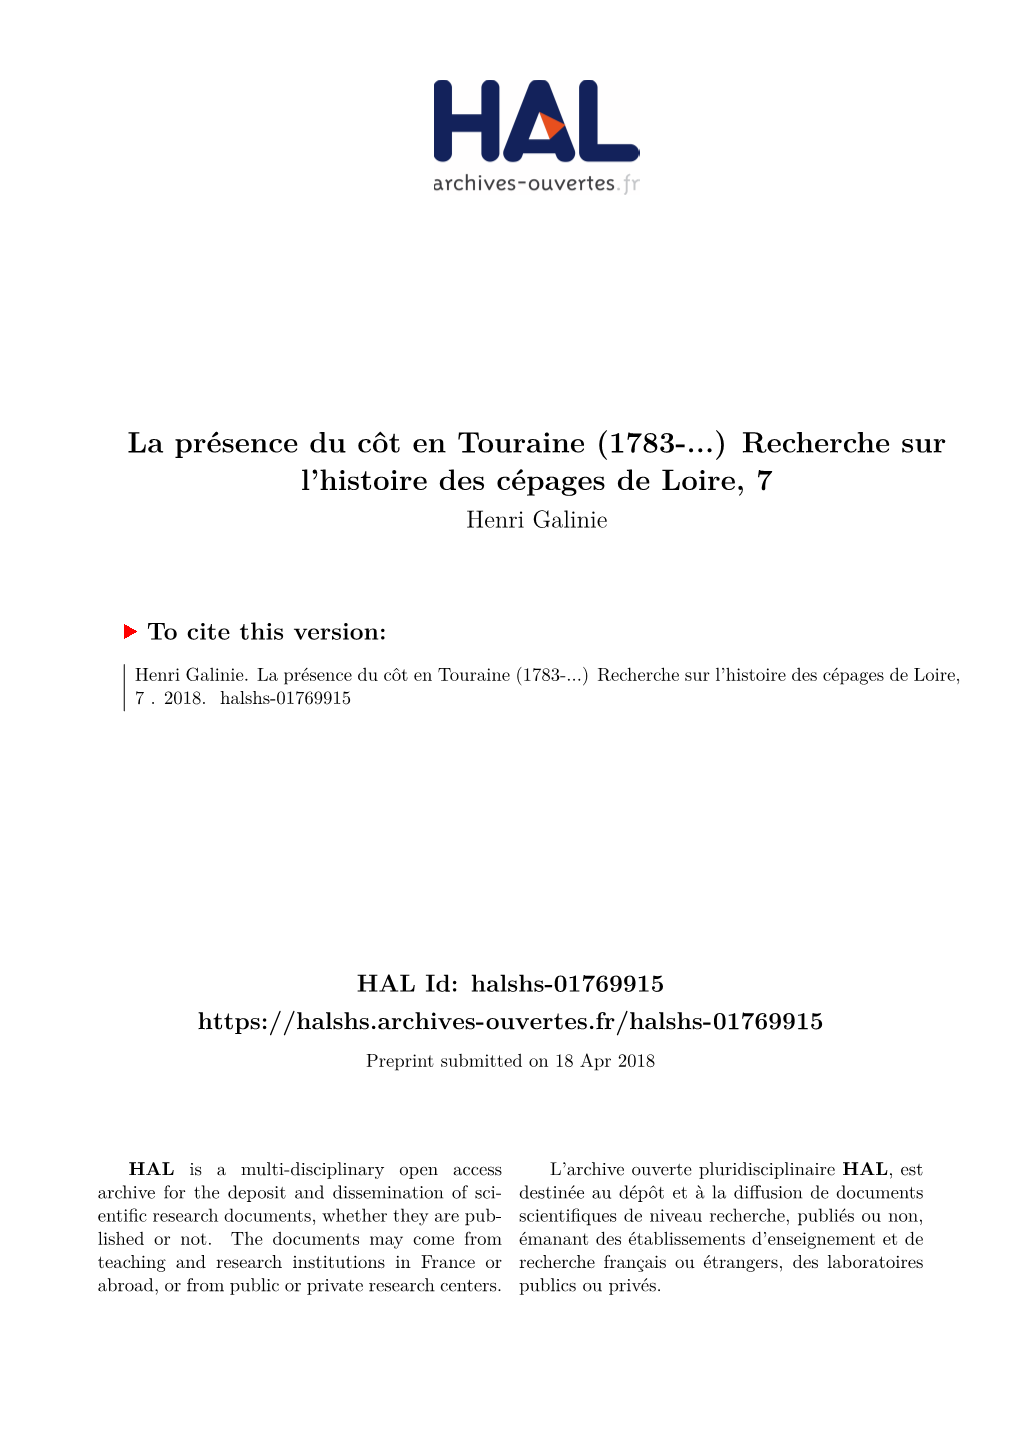 (1783-...) Recherche Sur L'histoire Des Cépages De Loire, 7